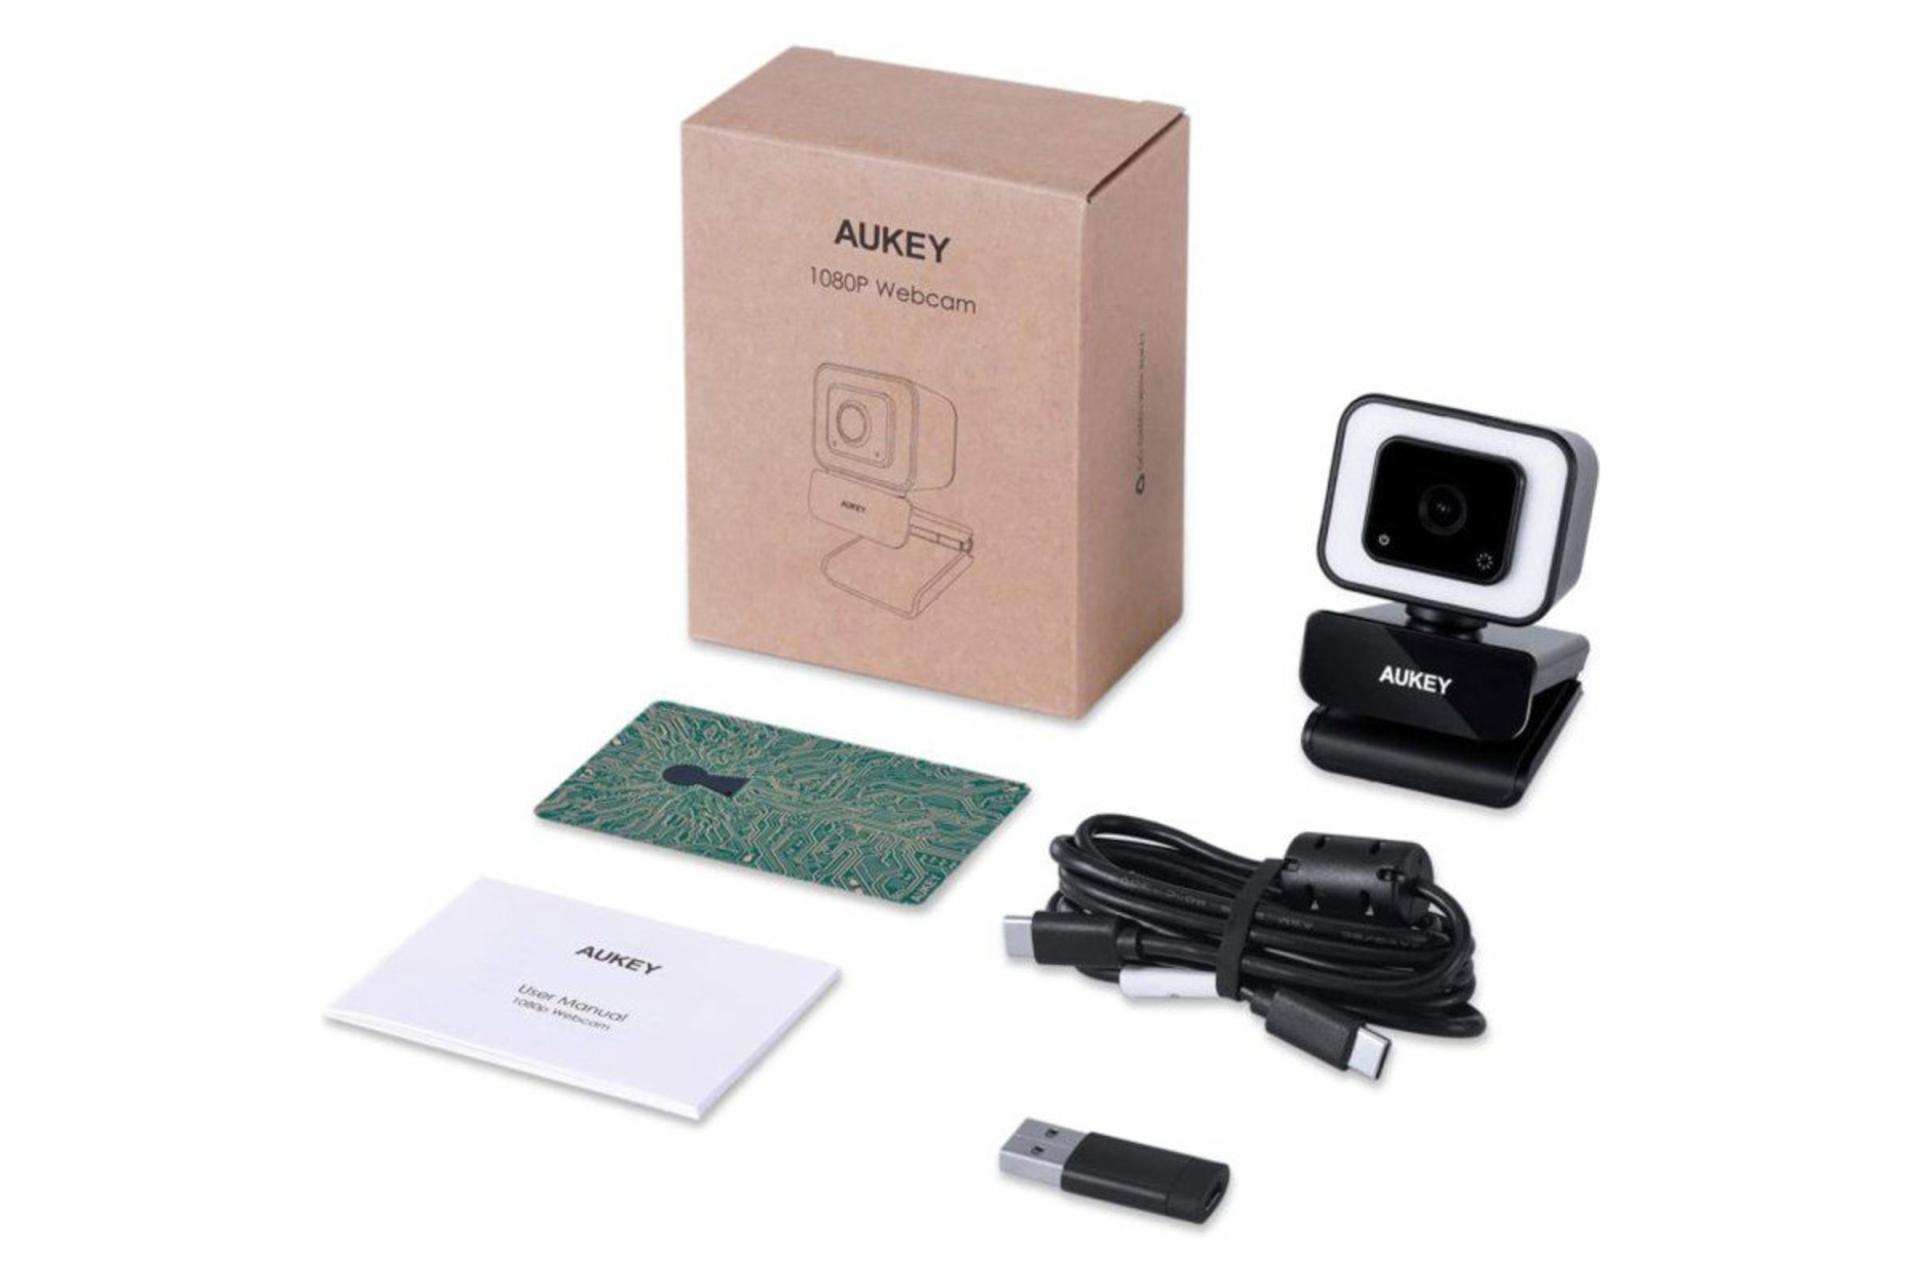 بسته بندی و کابل USB وب کم آکی Aukey PC-LM6